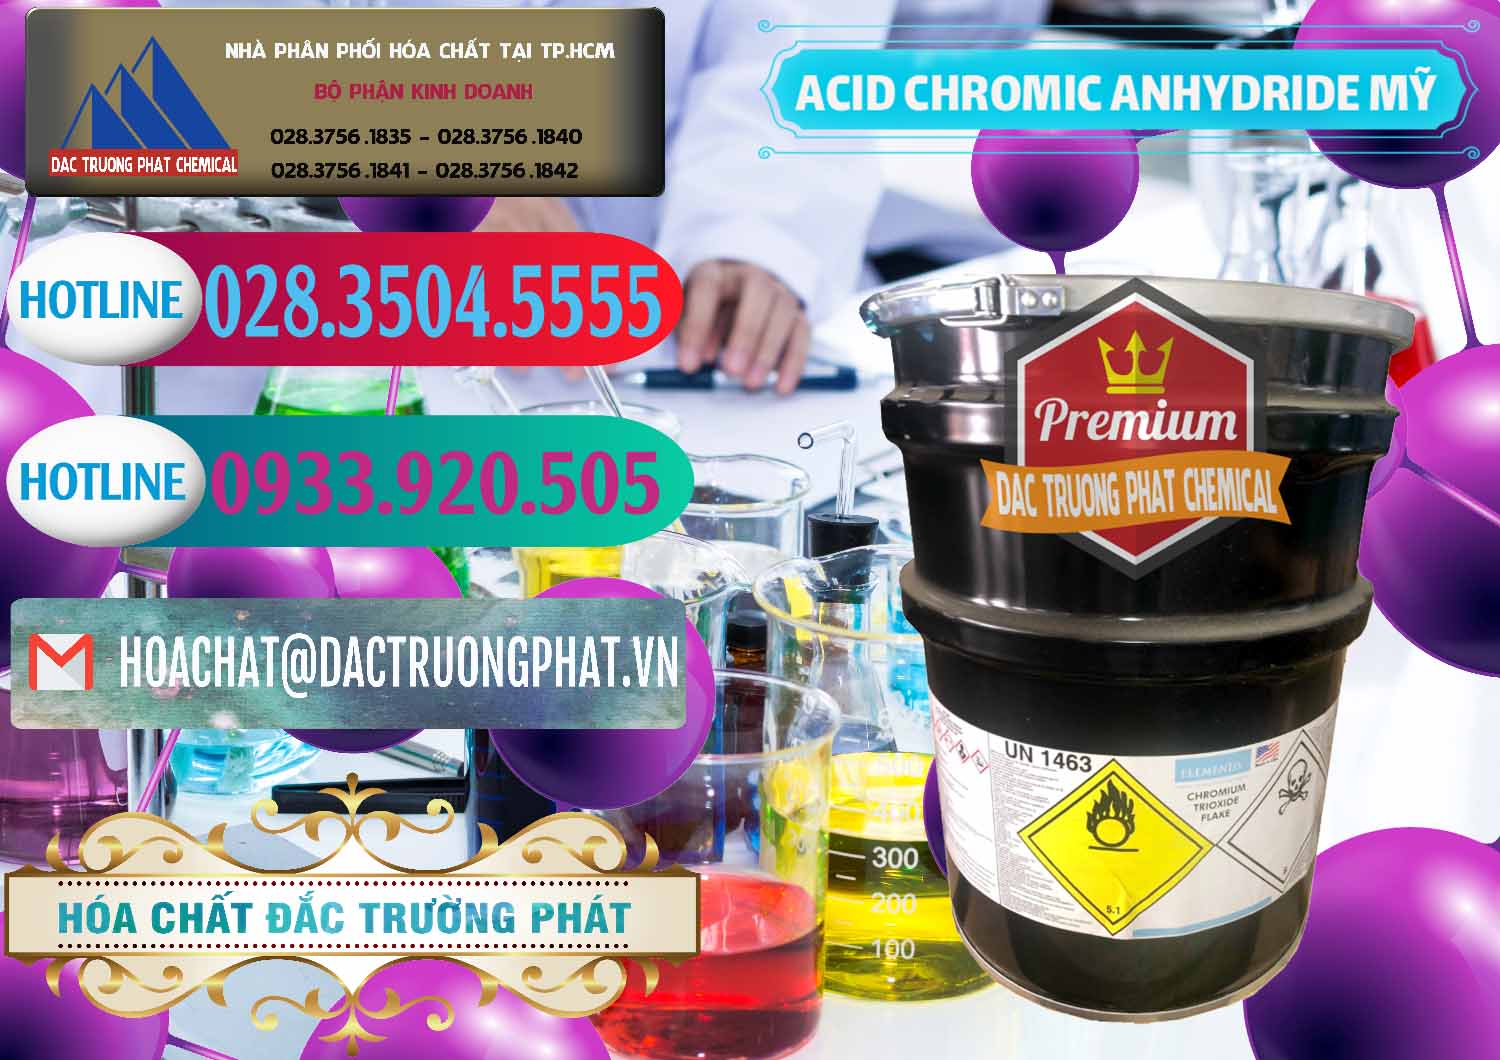 Cty kinh doanh - bán Acid Chromic Anhydride - Cromic CRO3 USA Mỹ - 0364 - Đơn vị chuyên nhập khẩu ( phân phối ) hóa chất tại TP.HCM - truongphat.vn